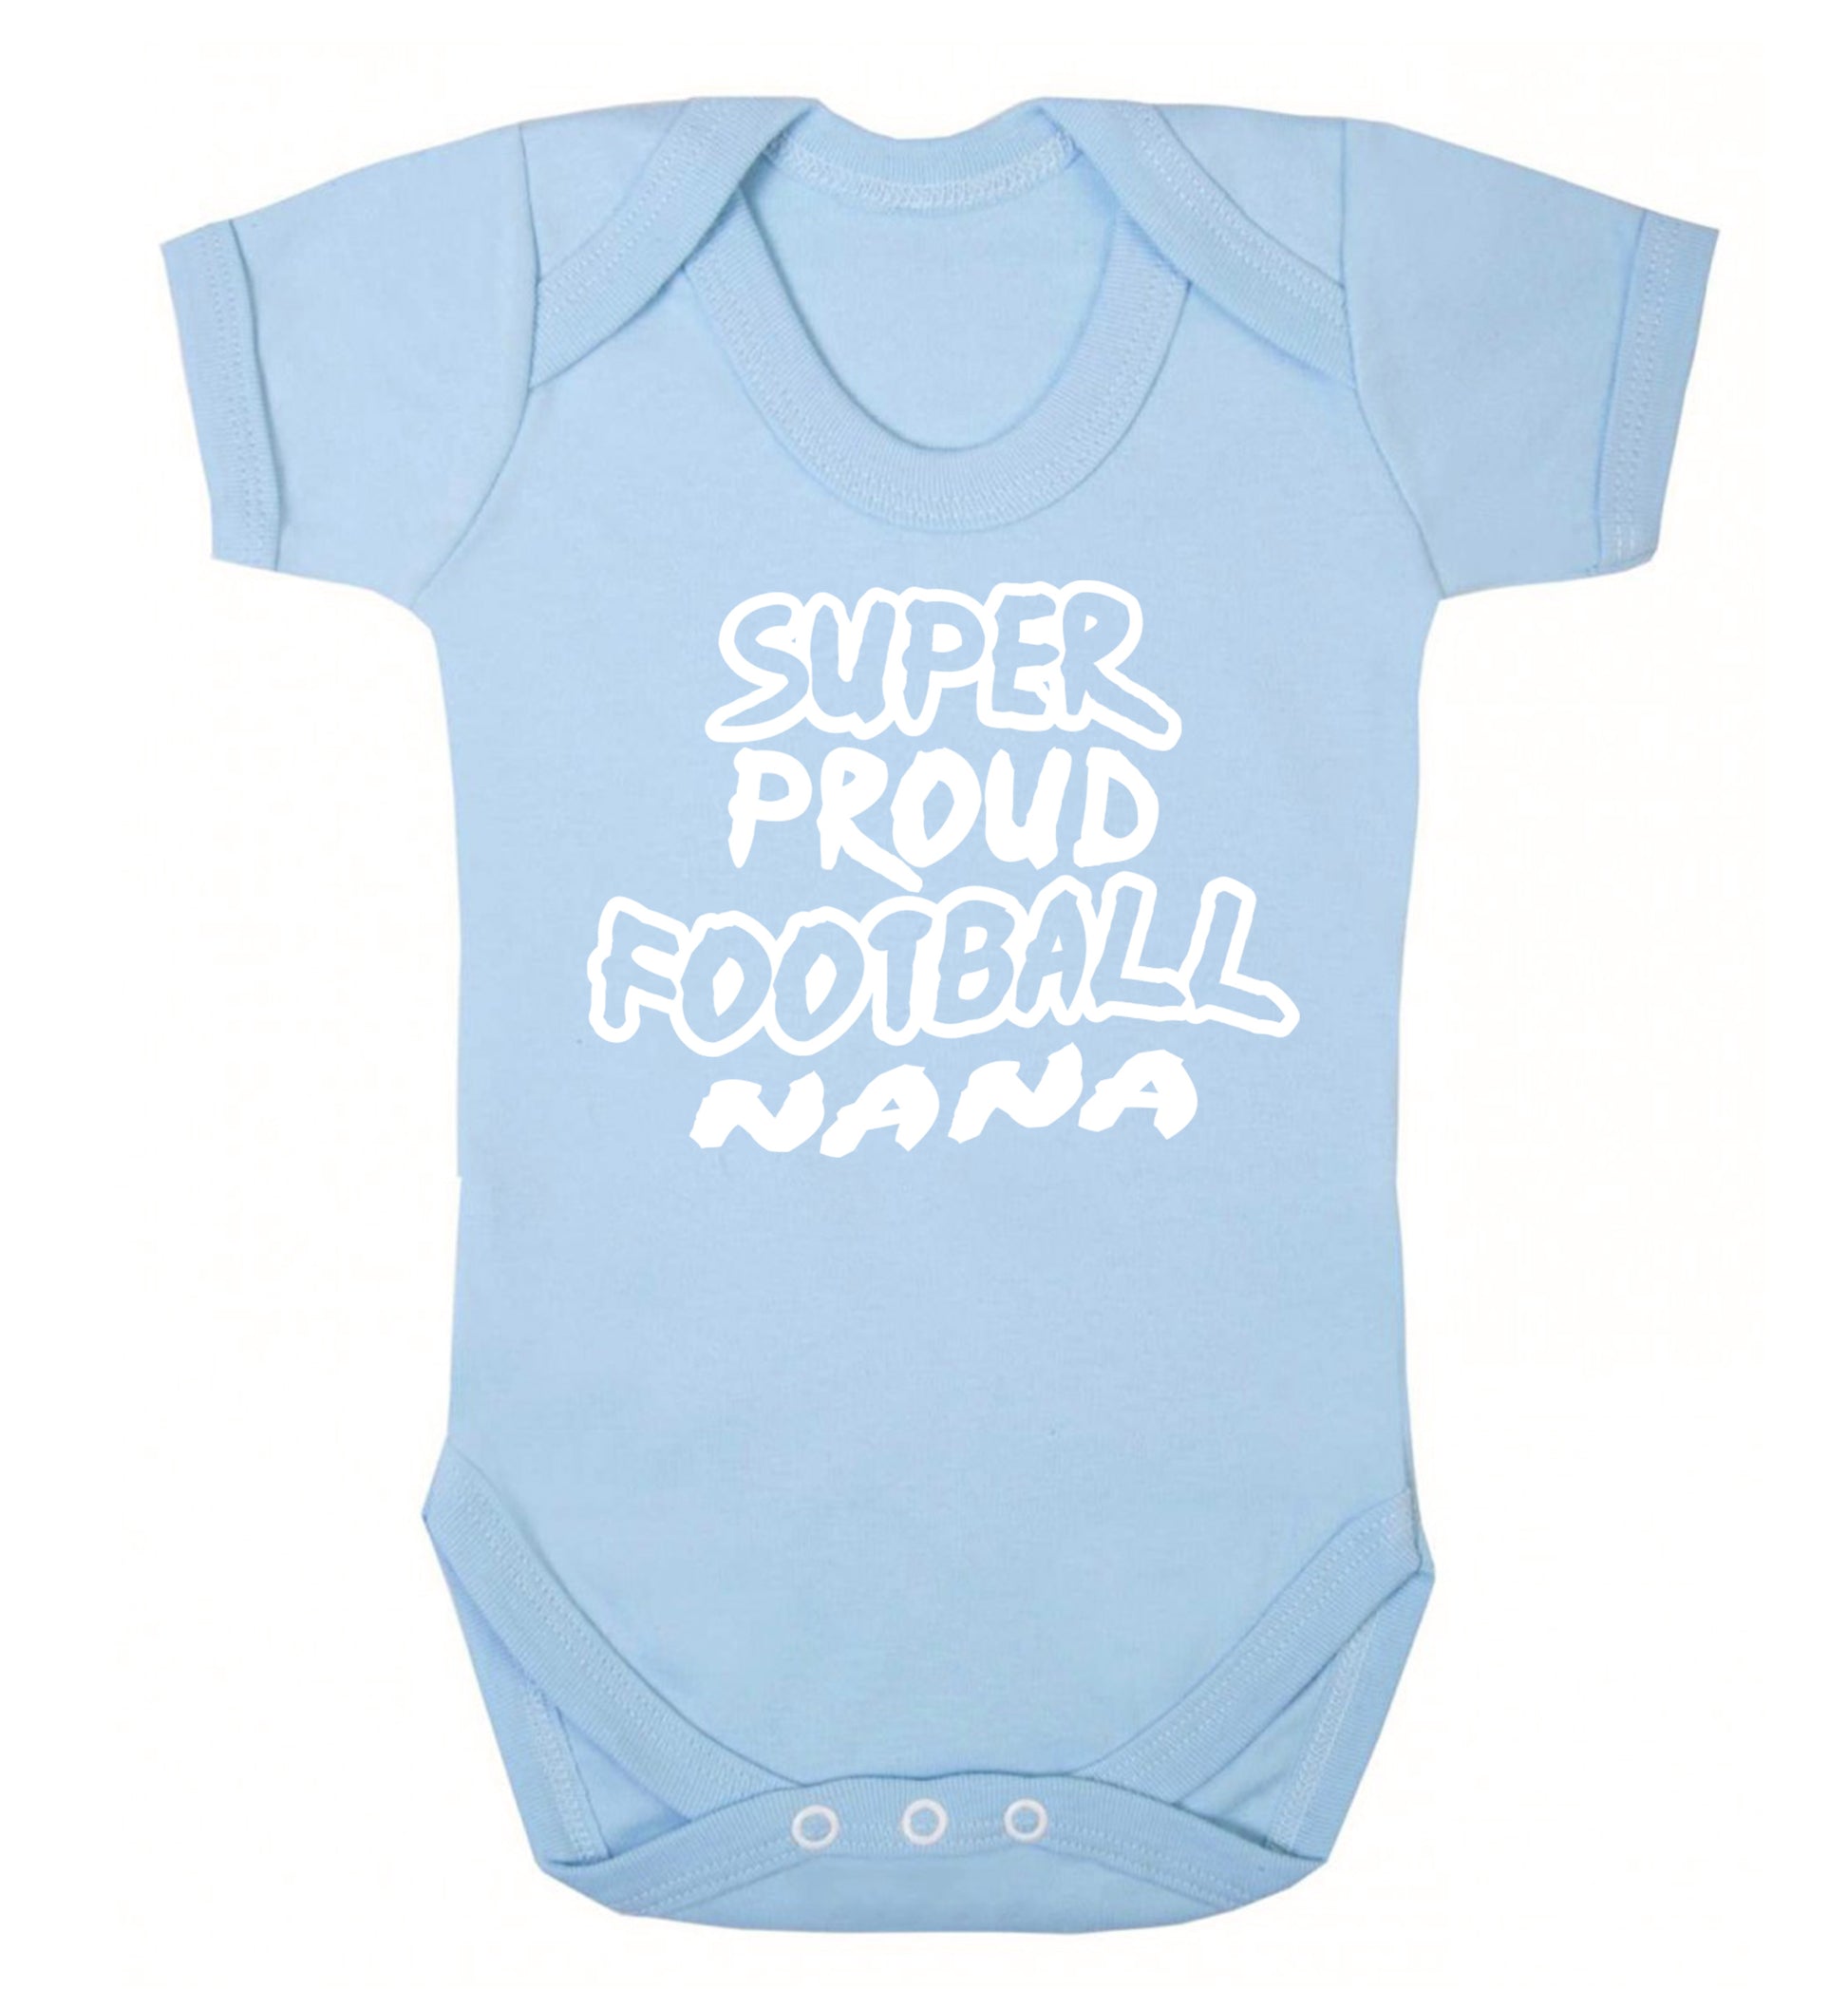 Super proud football nana Baby Vest pale blue 18-24 months